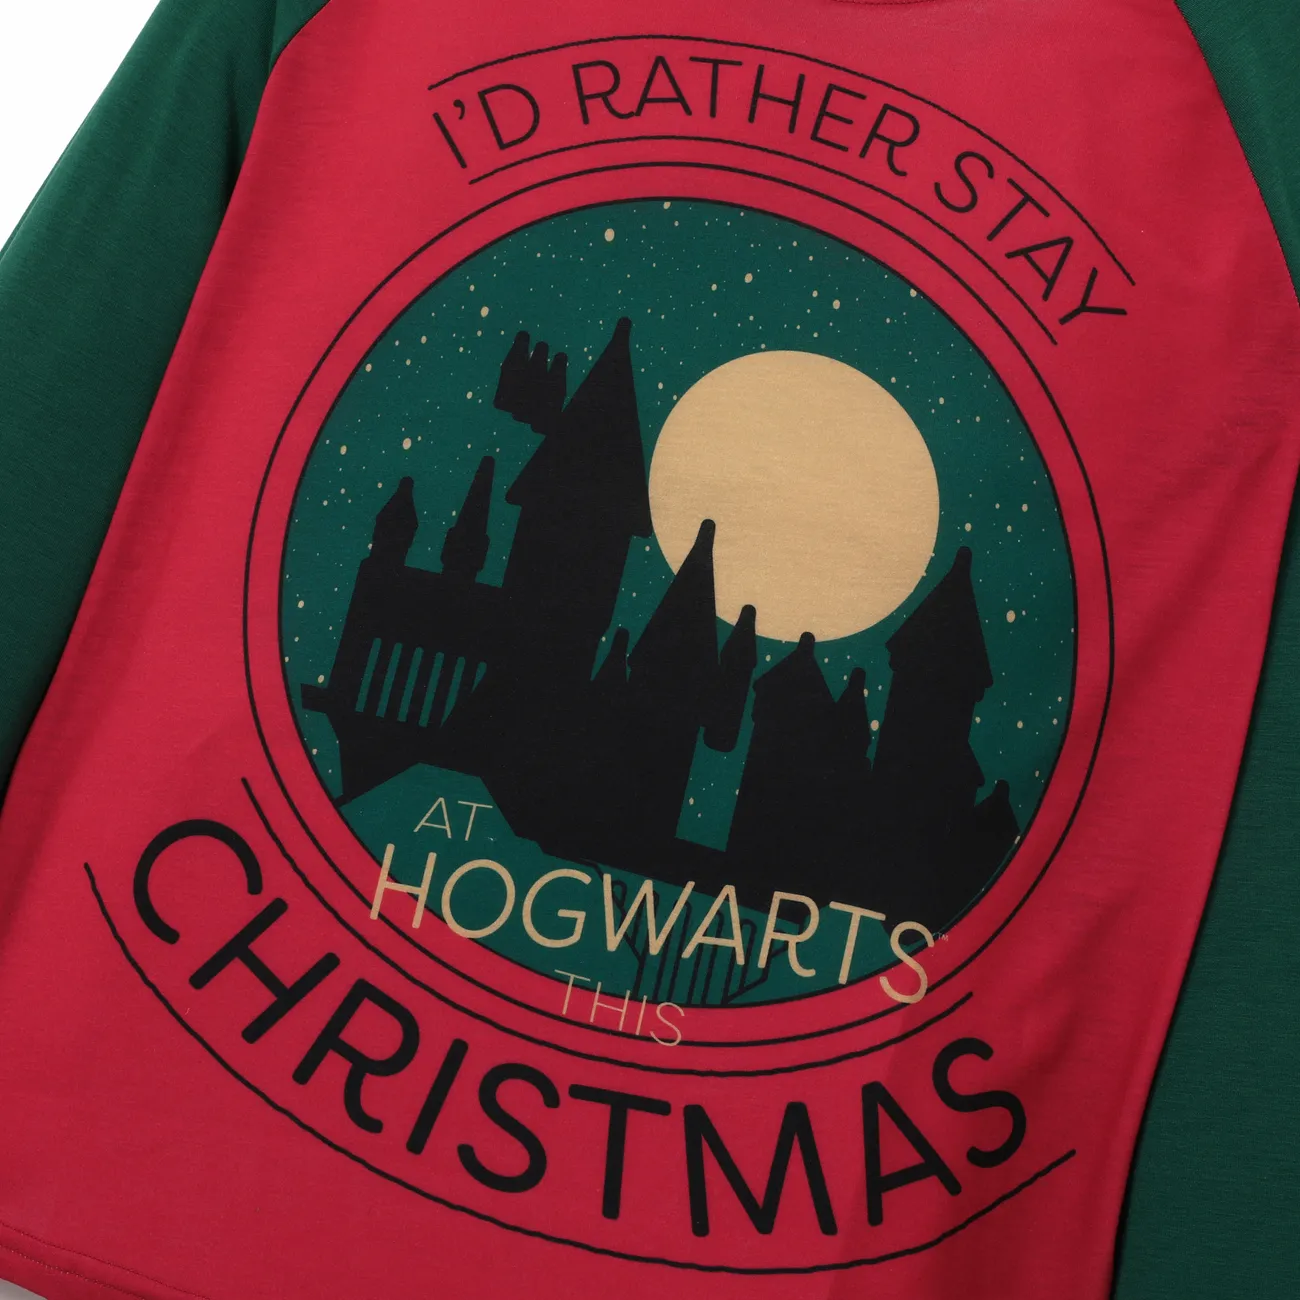 Harry Potter Noël Look Familial Manches longues Tenues de famille assorties Pyjamas (Flame Resistant) Multicolore big image 1